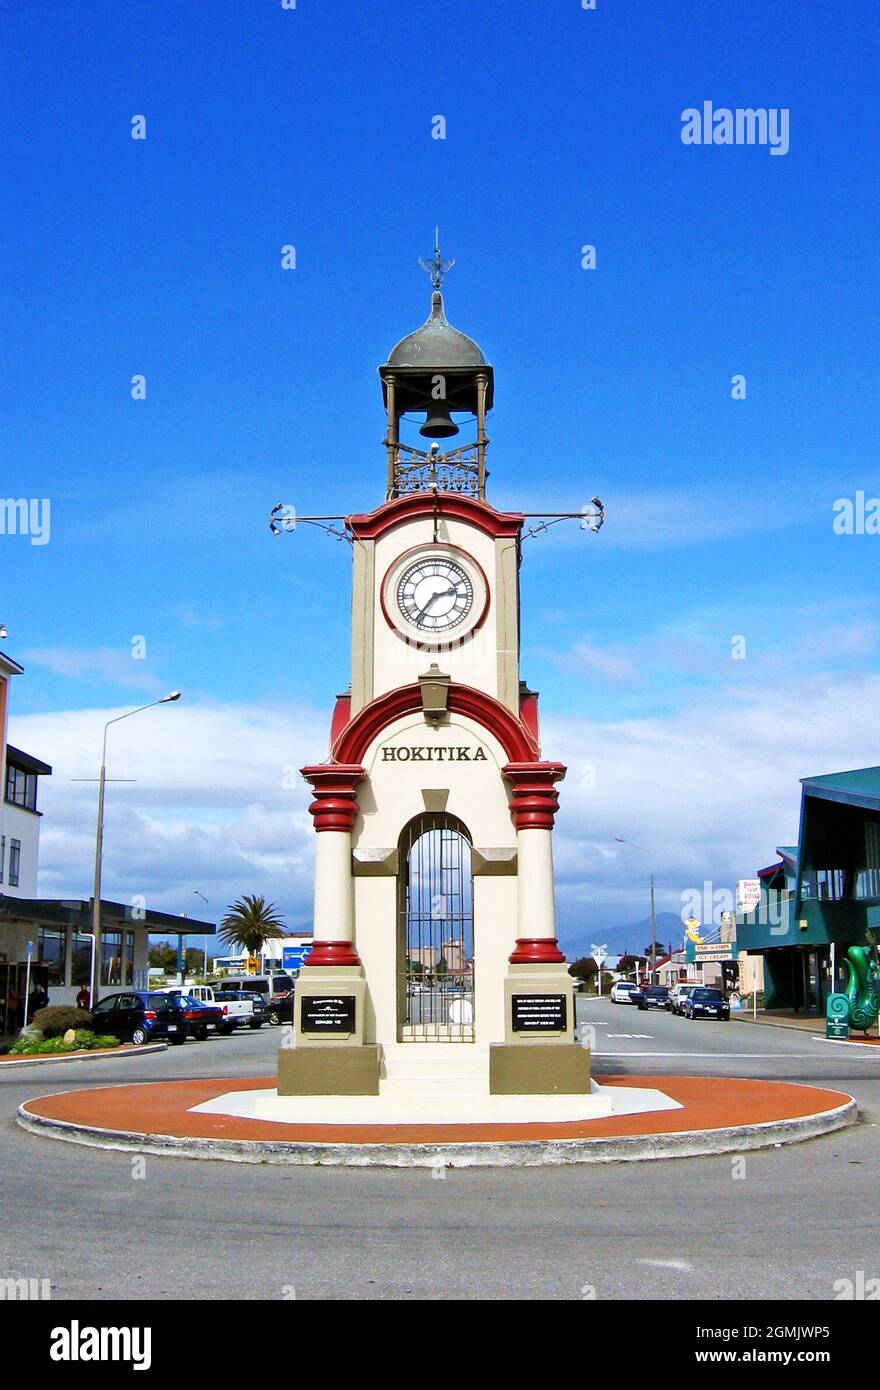 El emblemático monumento de la torre del reloj en el cruce de las calles Sewell y Weld en Hokitika, Distrito de Westland, Costa Oeste, Isla del Sur, Nueva Zelanda. La torre del reloj Boer War and Coronation Memorial se inauguró en 1903. Foto de stock